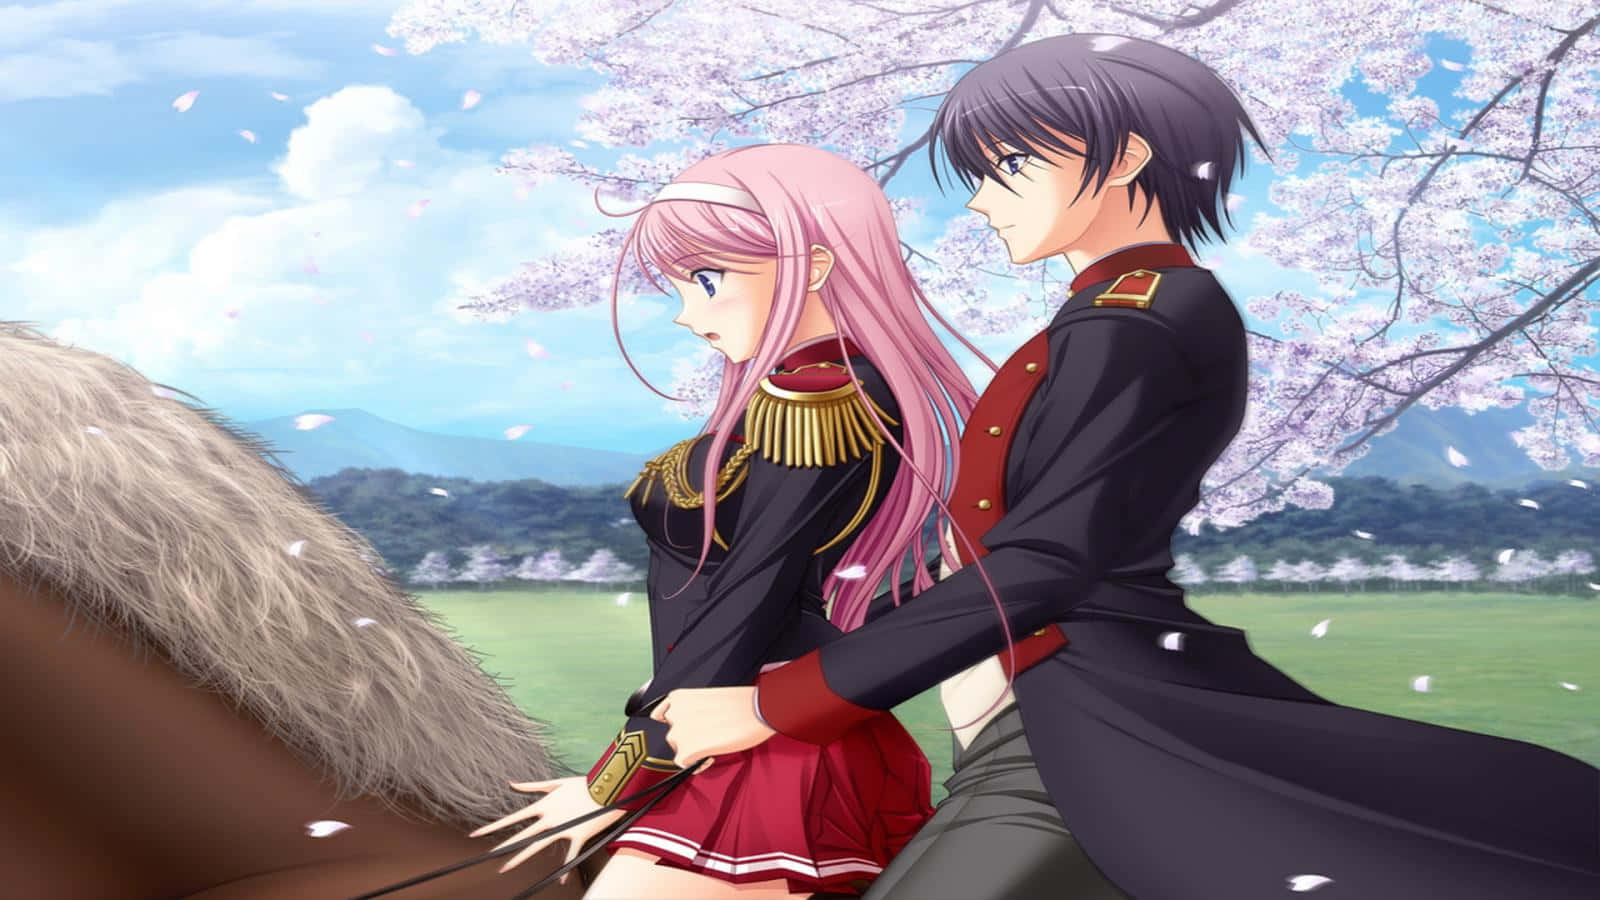 Kiray Lacus Montando A Caballo En Un Anime Romántico. Fondo de pantalla